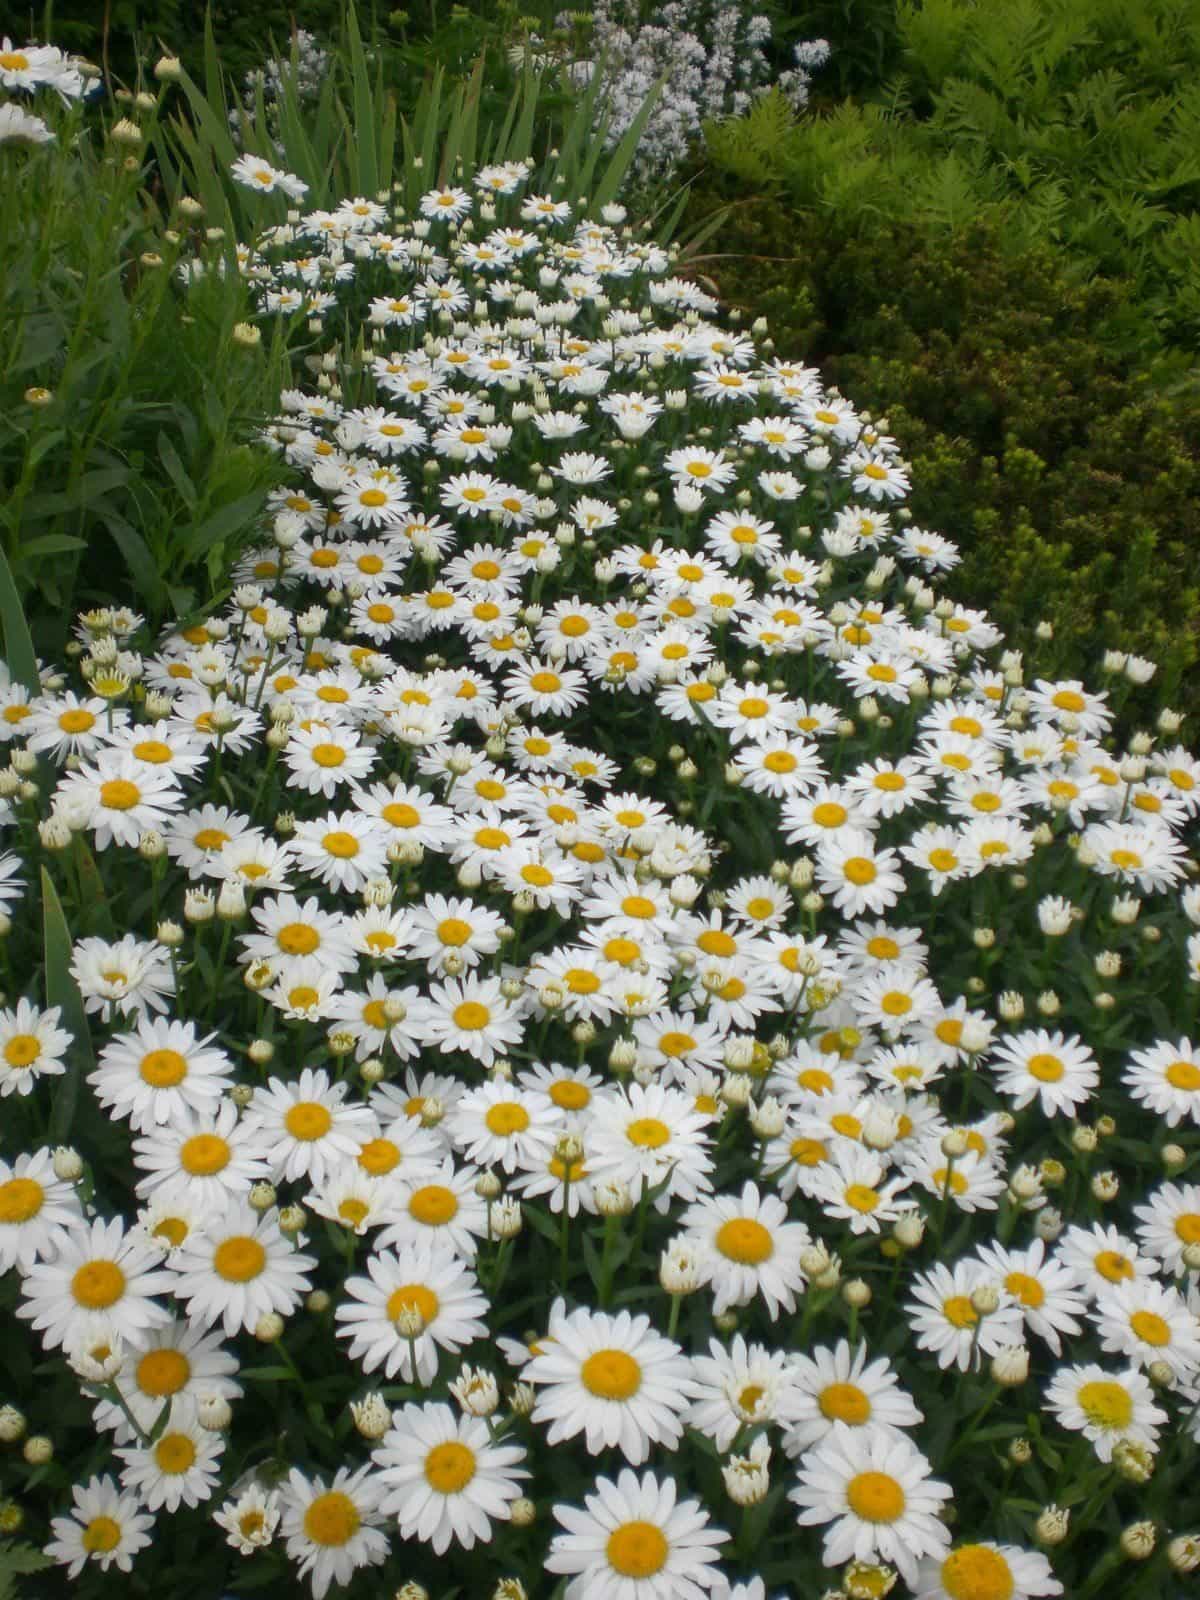 White Daisy Flower Plants In The Garden - Bright Daisy Flower Garden ...